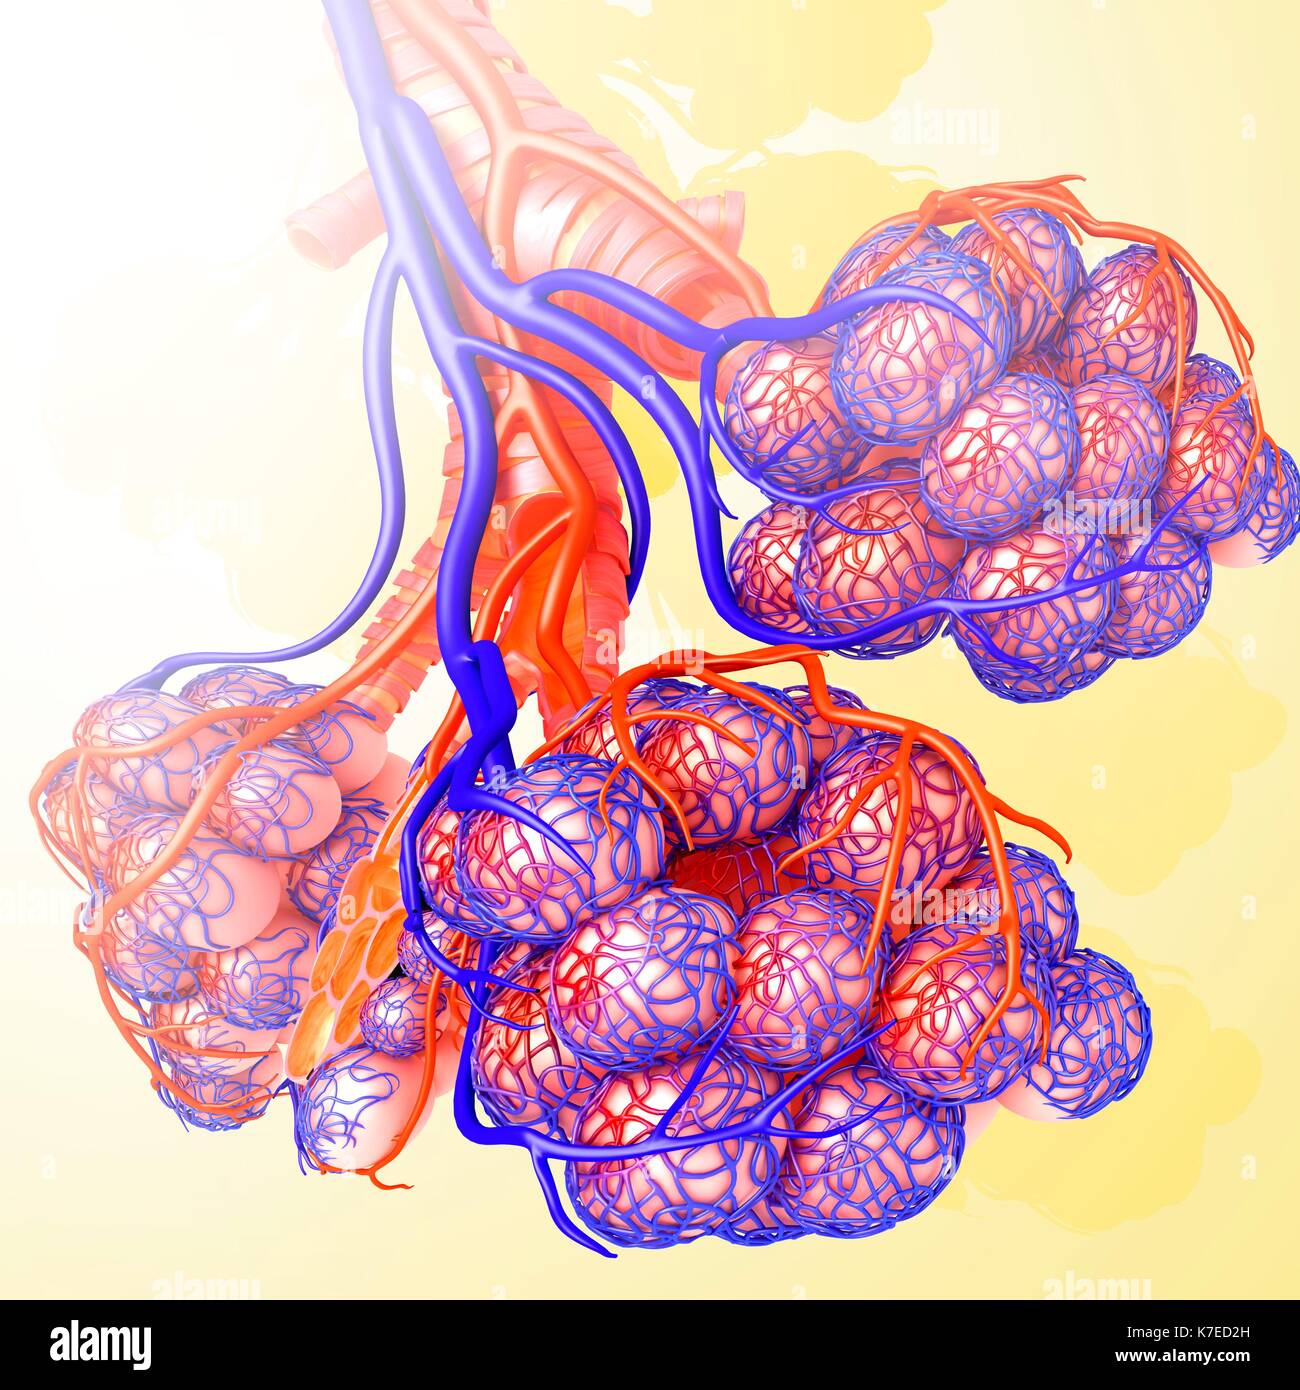 Illustration of alveoli and capillaries. Stock Photo